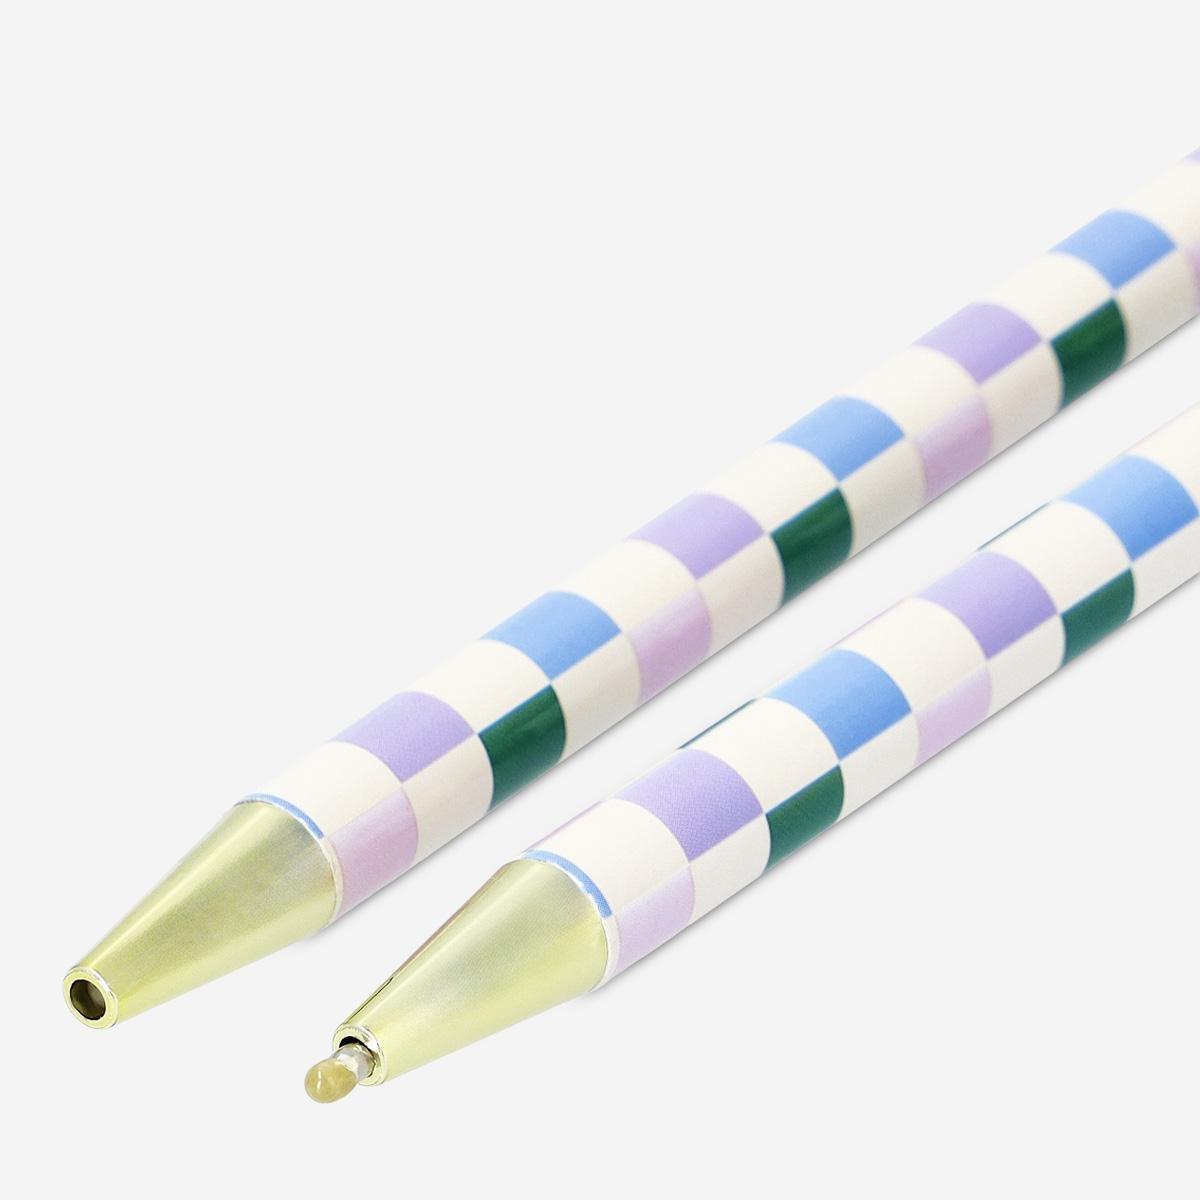 Multicolour ballpoint pens. 2 pcs